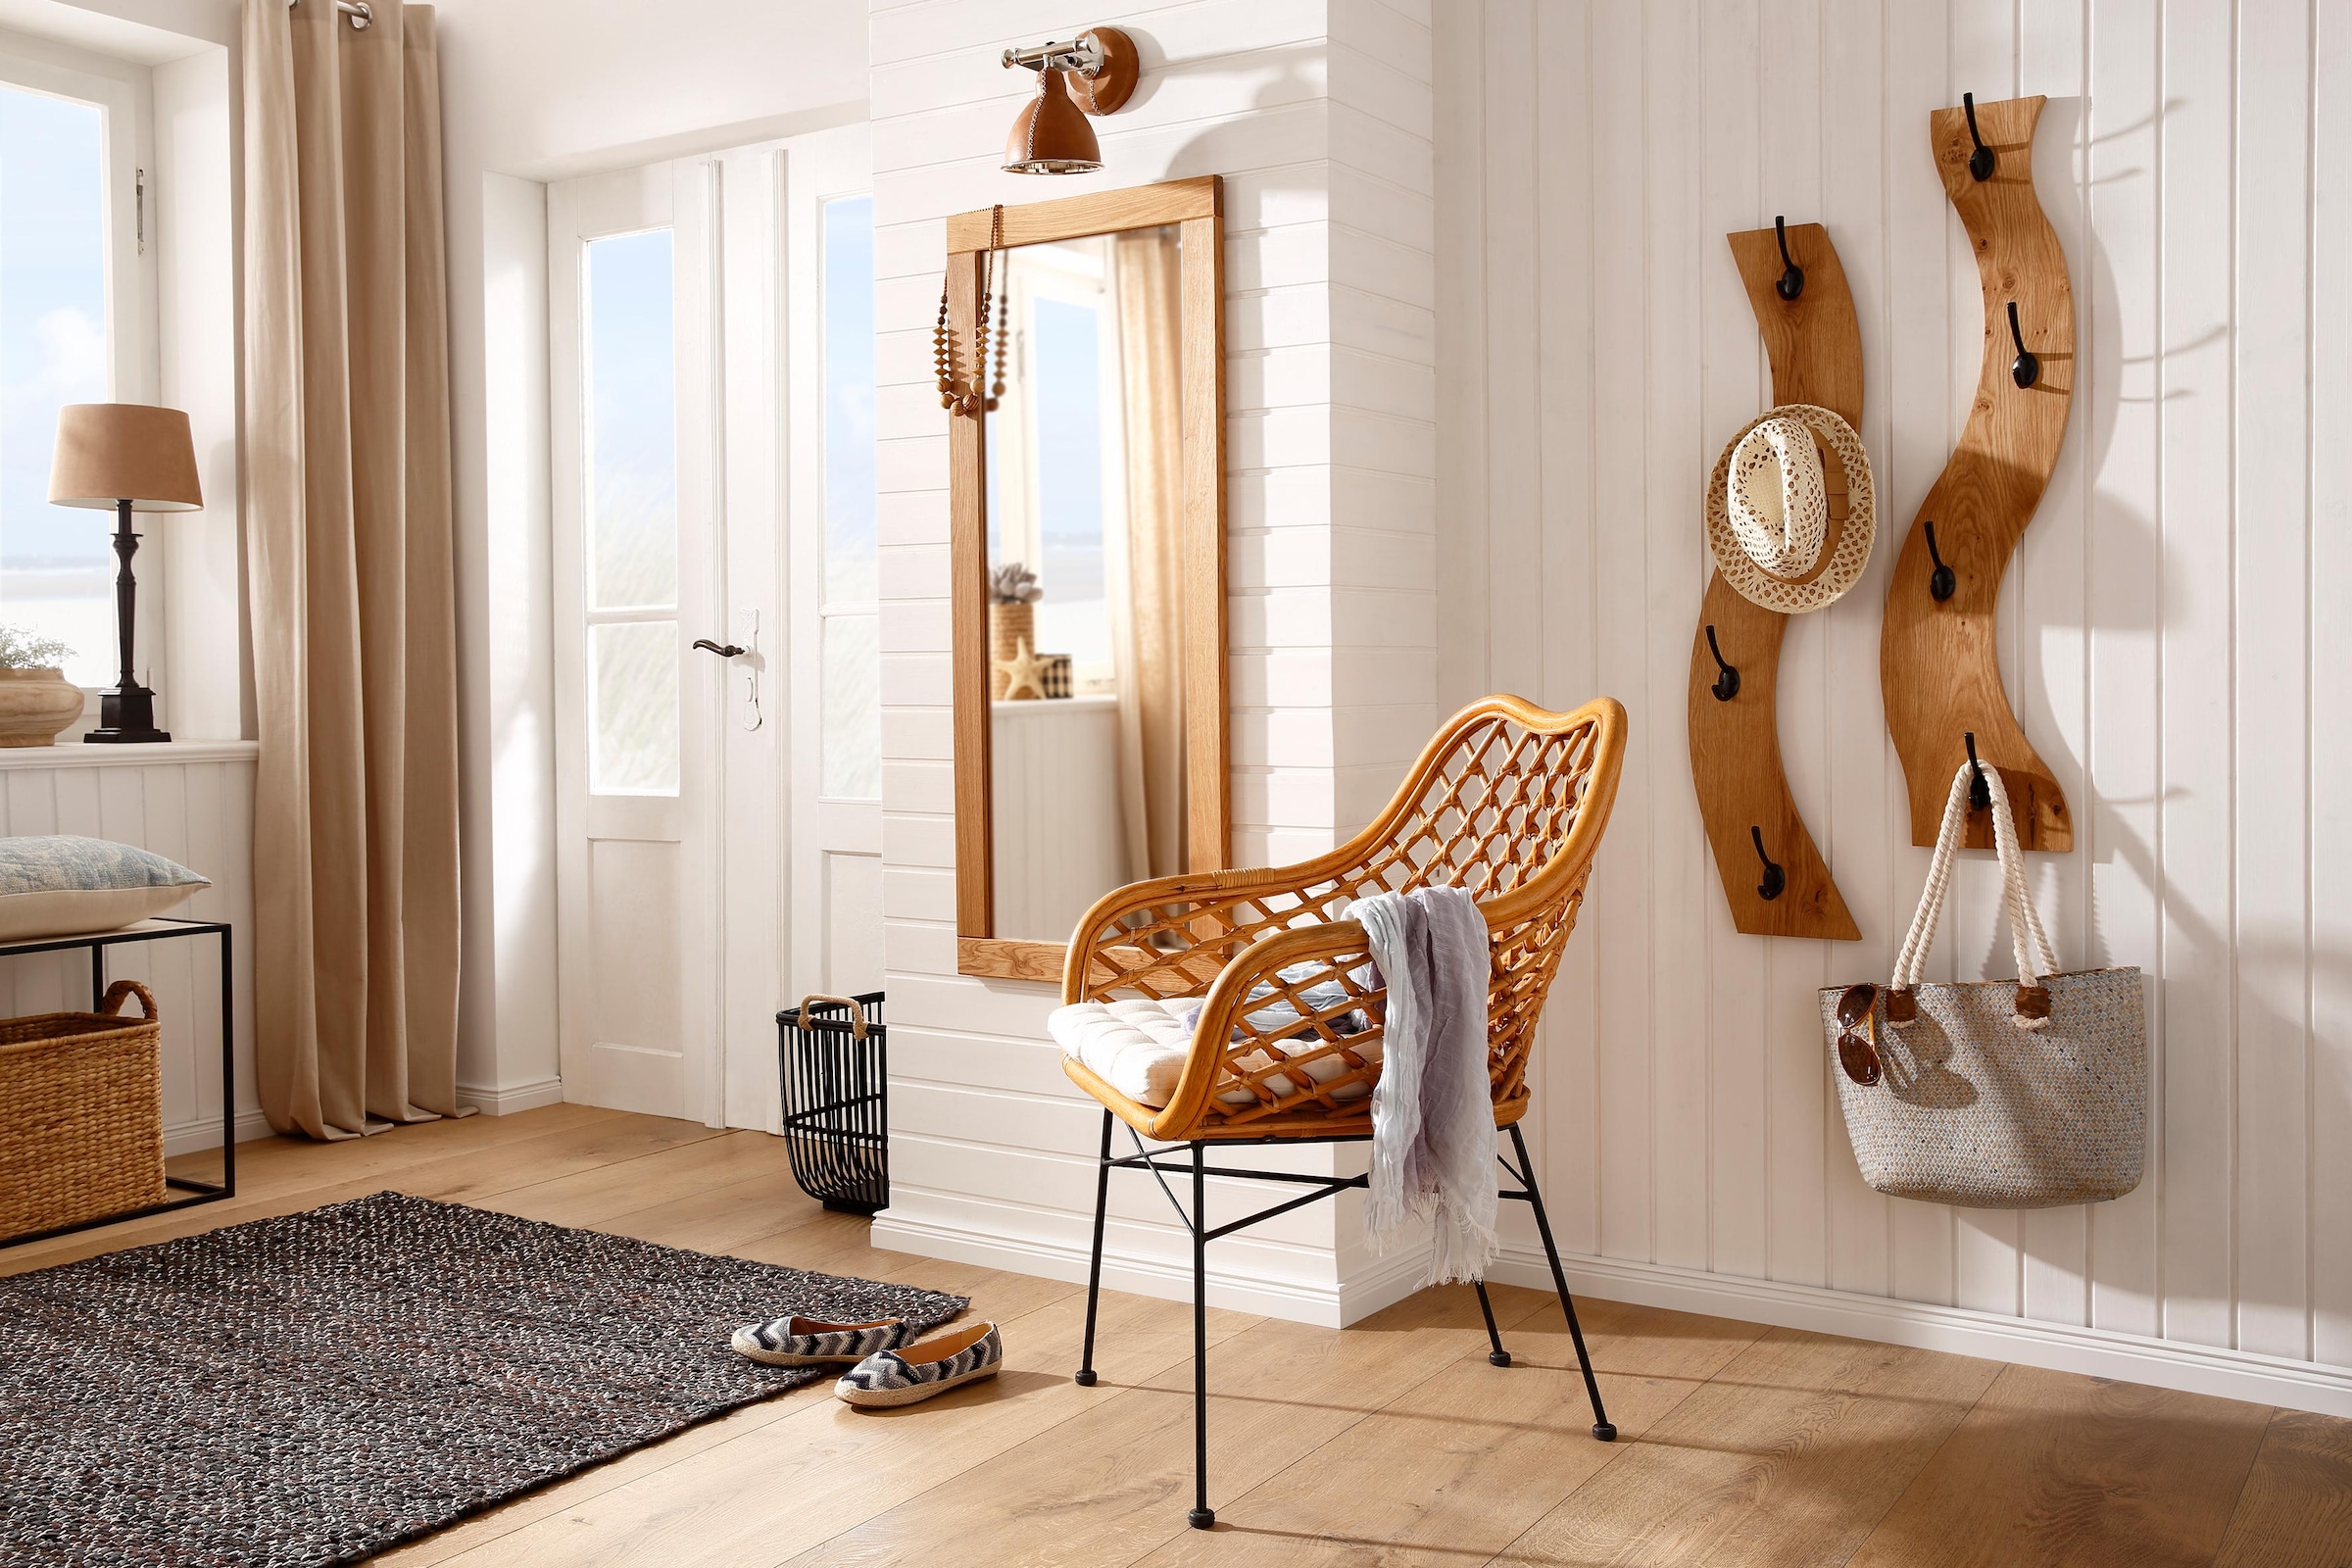 Home affaire Wandspiegel »Dura«, aus FSC-zertifiziertem Massivholz, Breite  50 cm kaufen